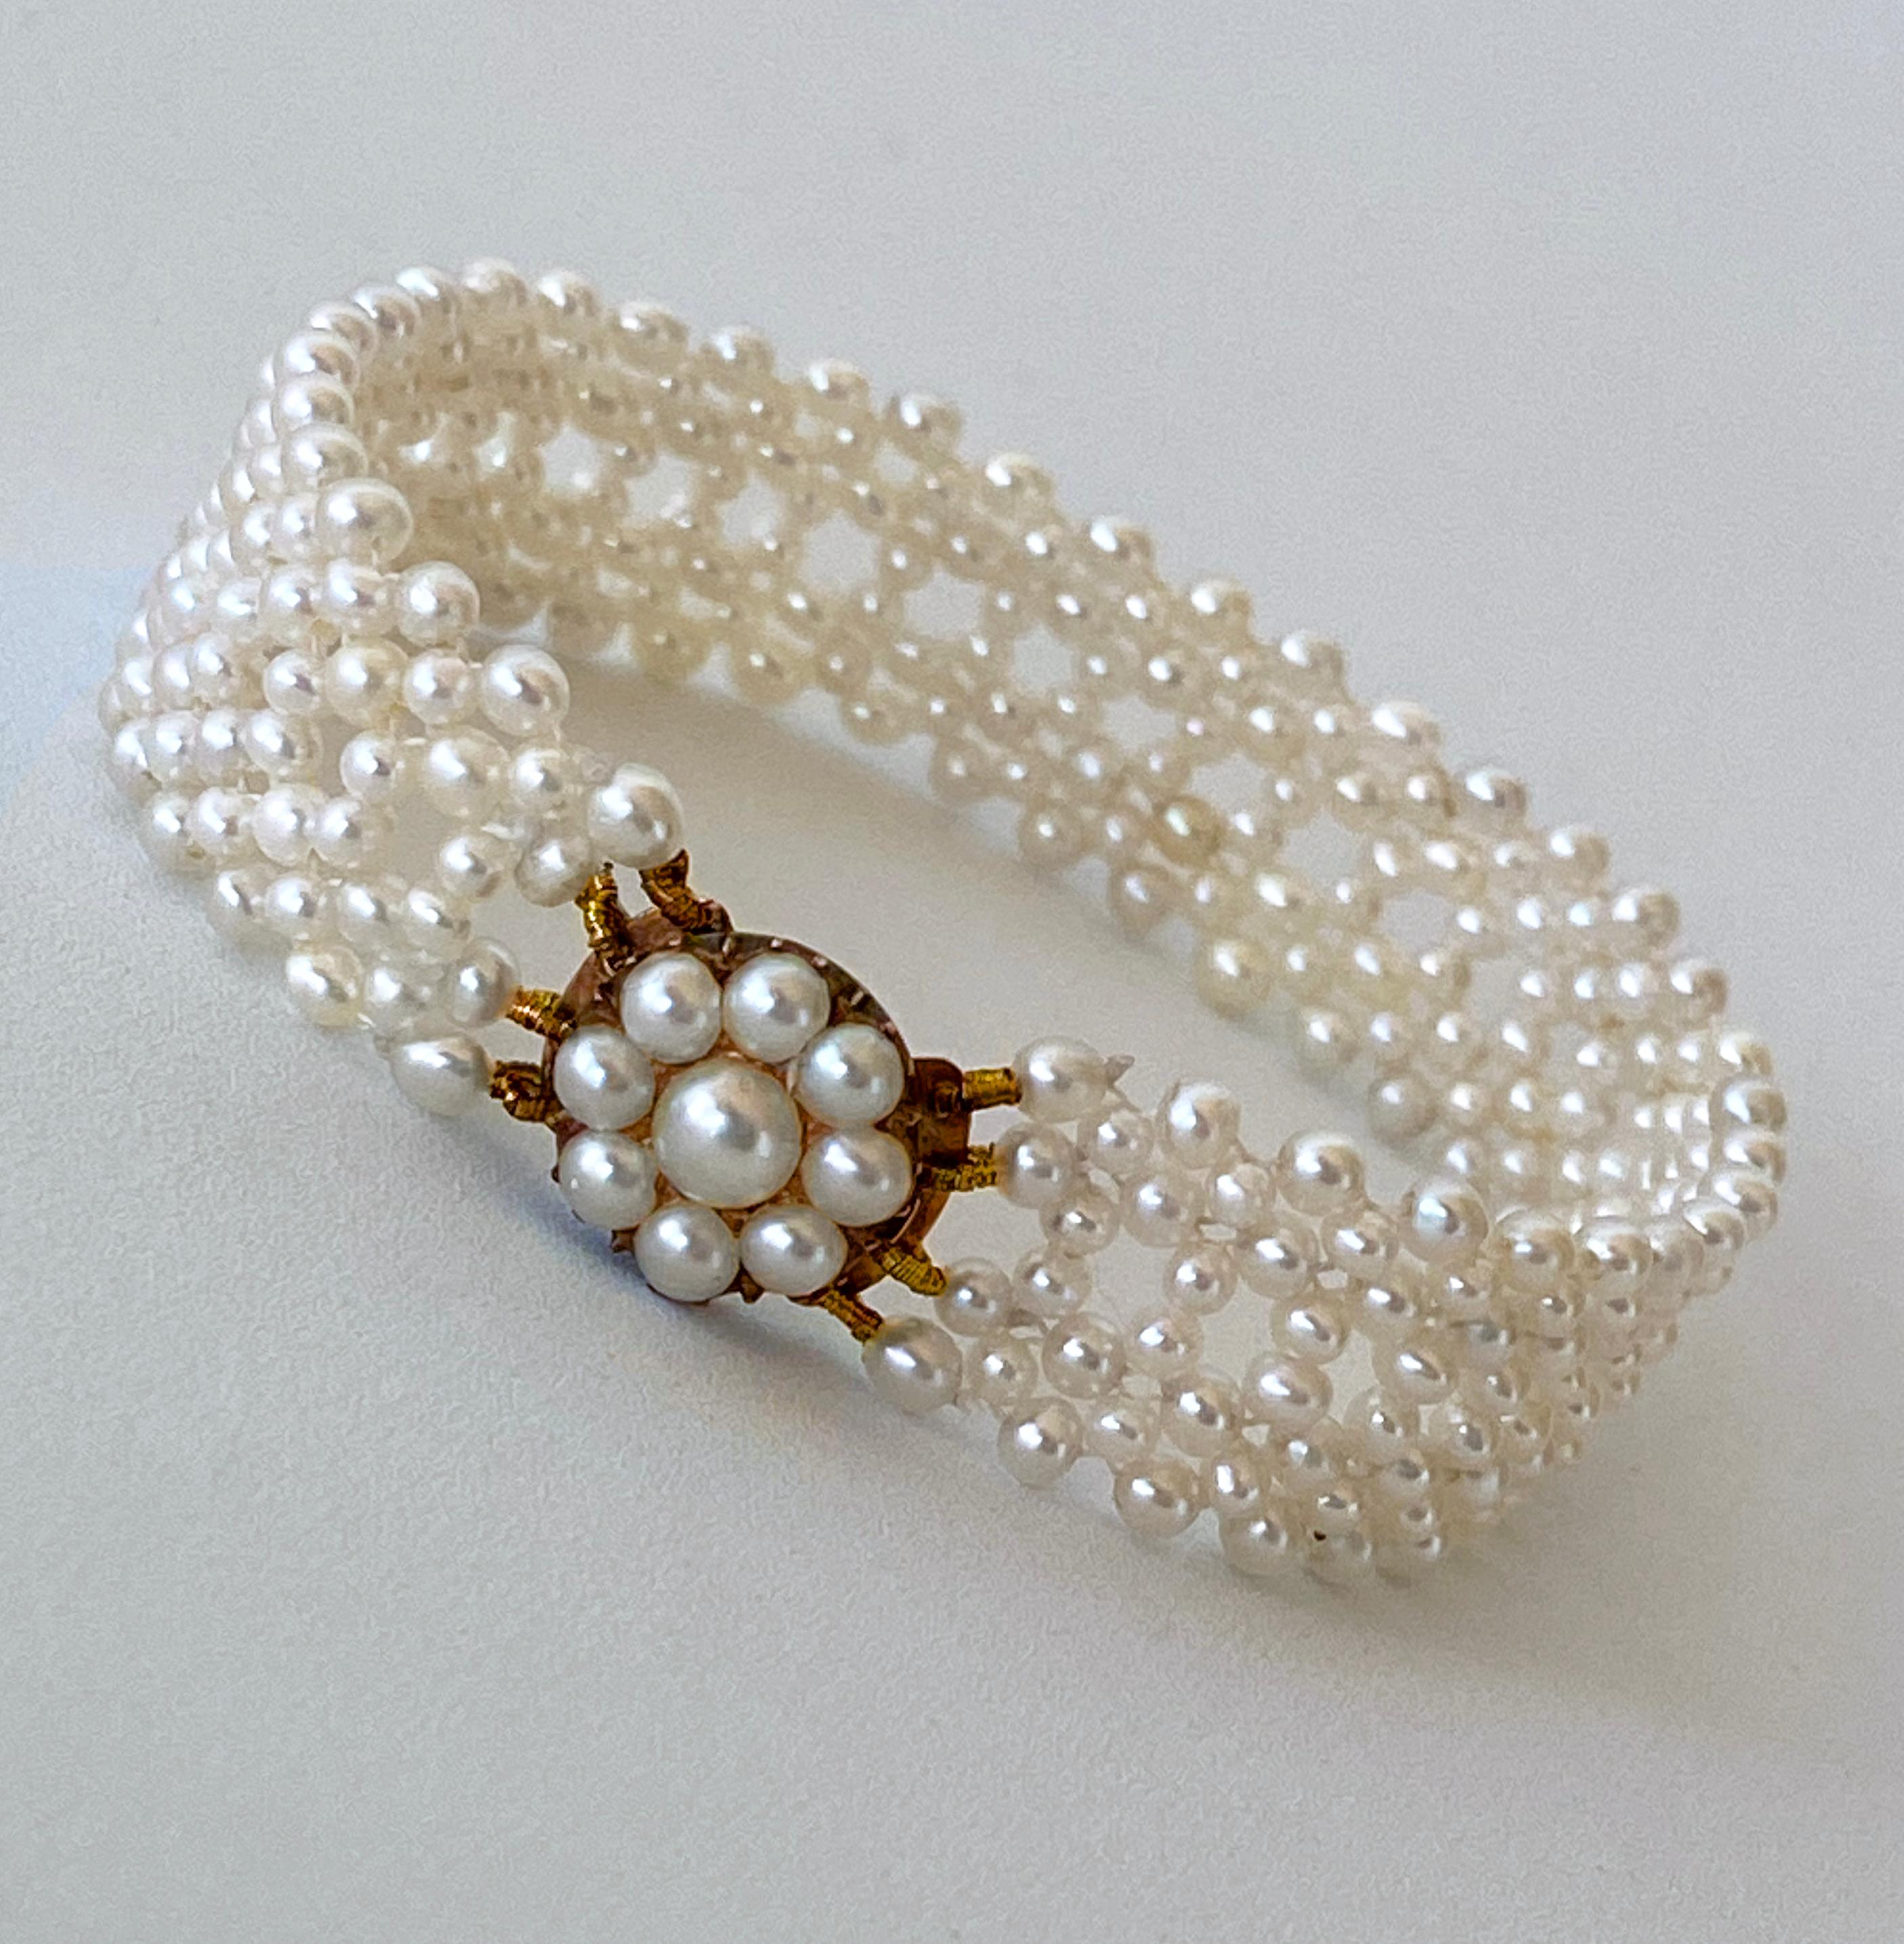 Atemberaubende One of A Kind Stück von Marina J. Dieses Armband verfügt über alle antiken Perlen kompliziert zusammen in eine feine Spitze wie Design gewebt. Die Eleganz dieses Armbands wird durch das Vintage Original Pearl Centerpiece, das